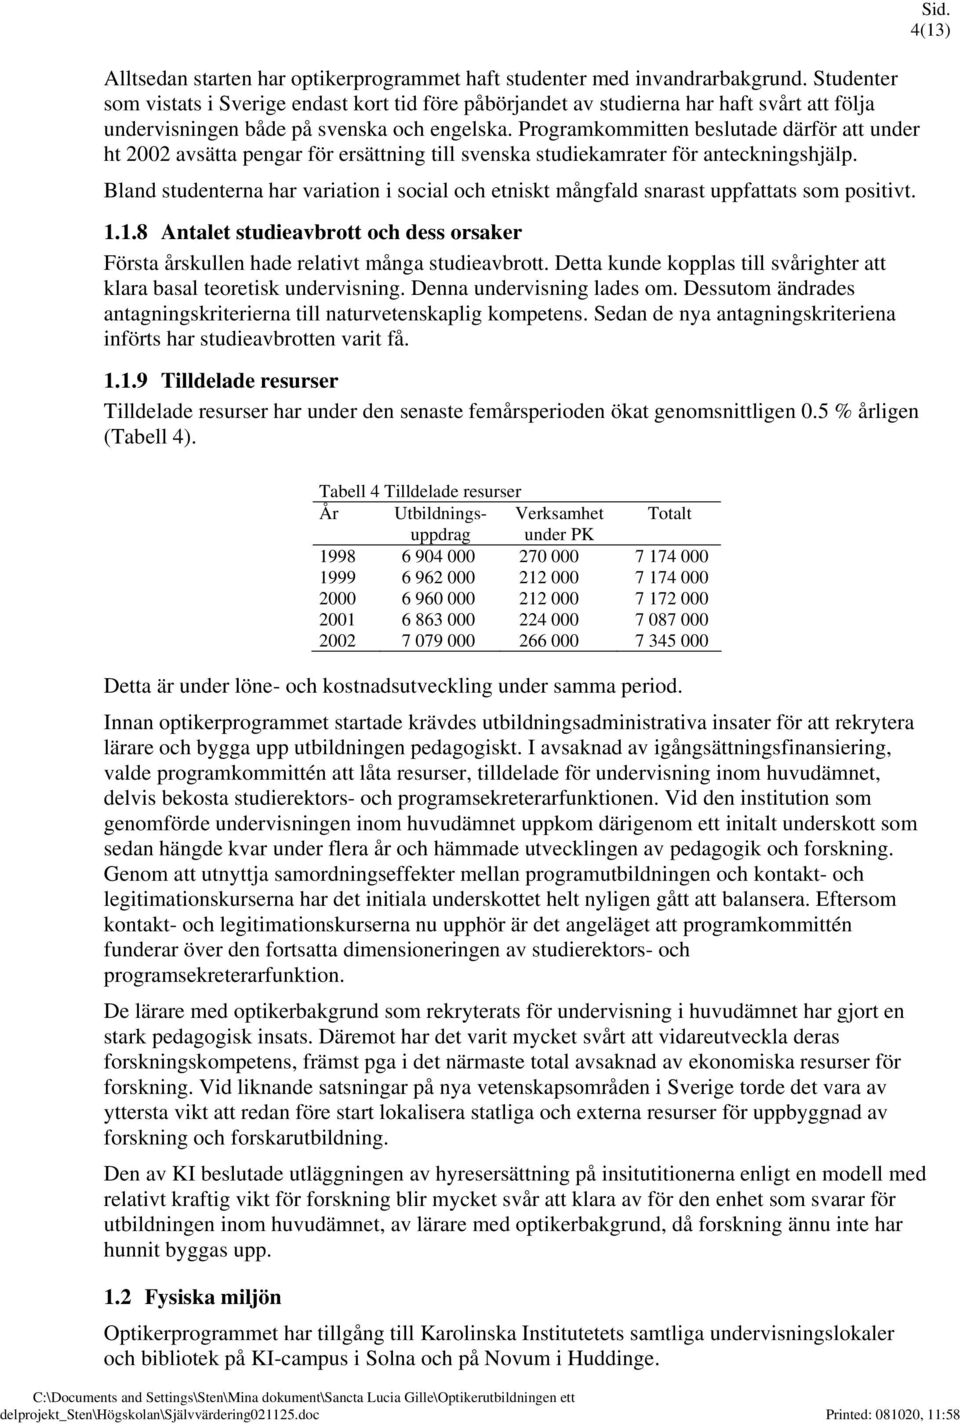 Programkommitten beslutade därför att under ht 2002 avsätta pengar för ersättning till svenska studiekamrater för anteckningshjälp.